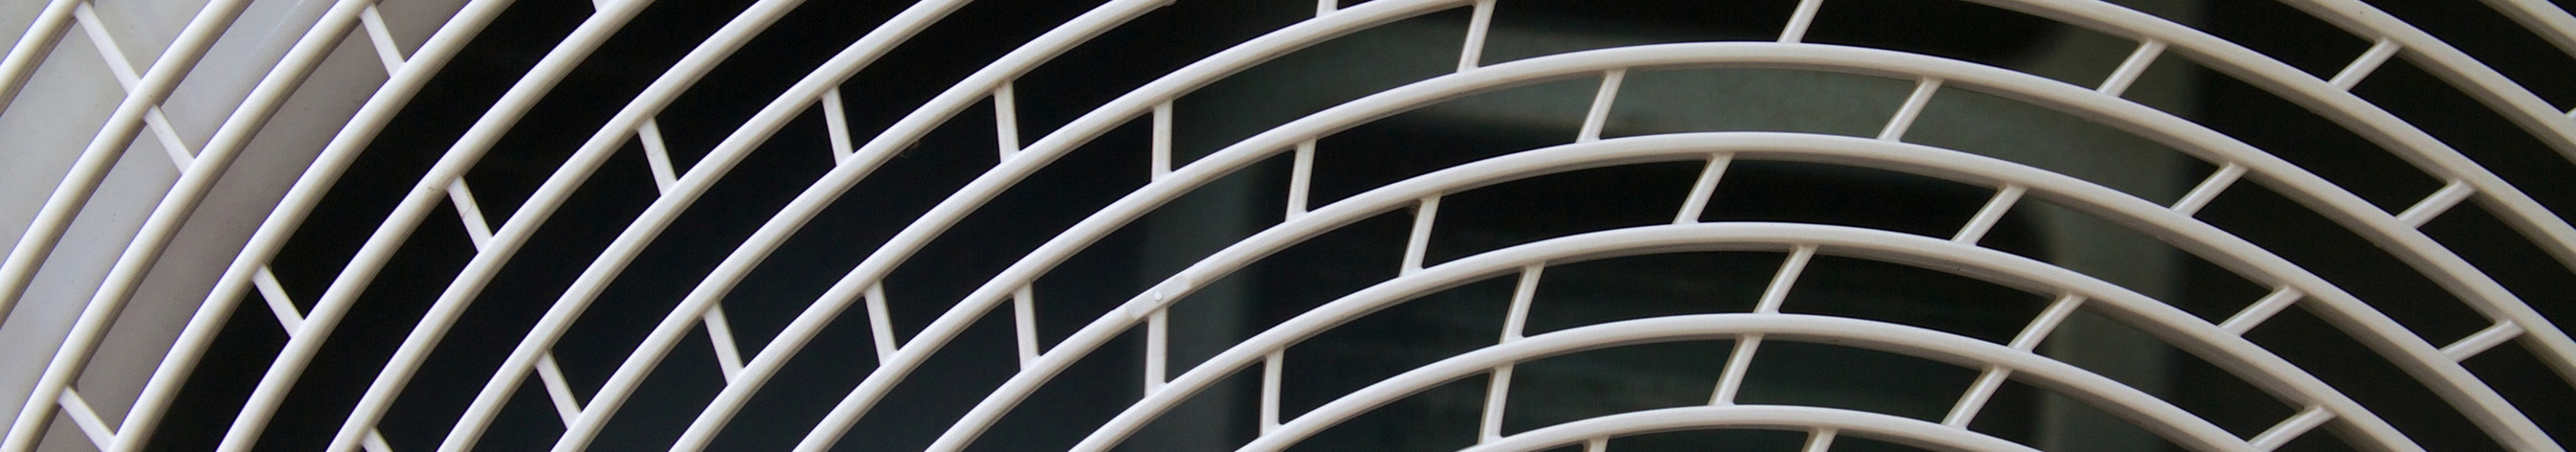 Датчики давления для систем отопления, вентиляции и кондиционирования HVAC Управление вентиляторами Контроль состояния воздушных фильтров Управление насосами контура охлаждающей воды Устройства автоматики и контроля